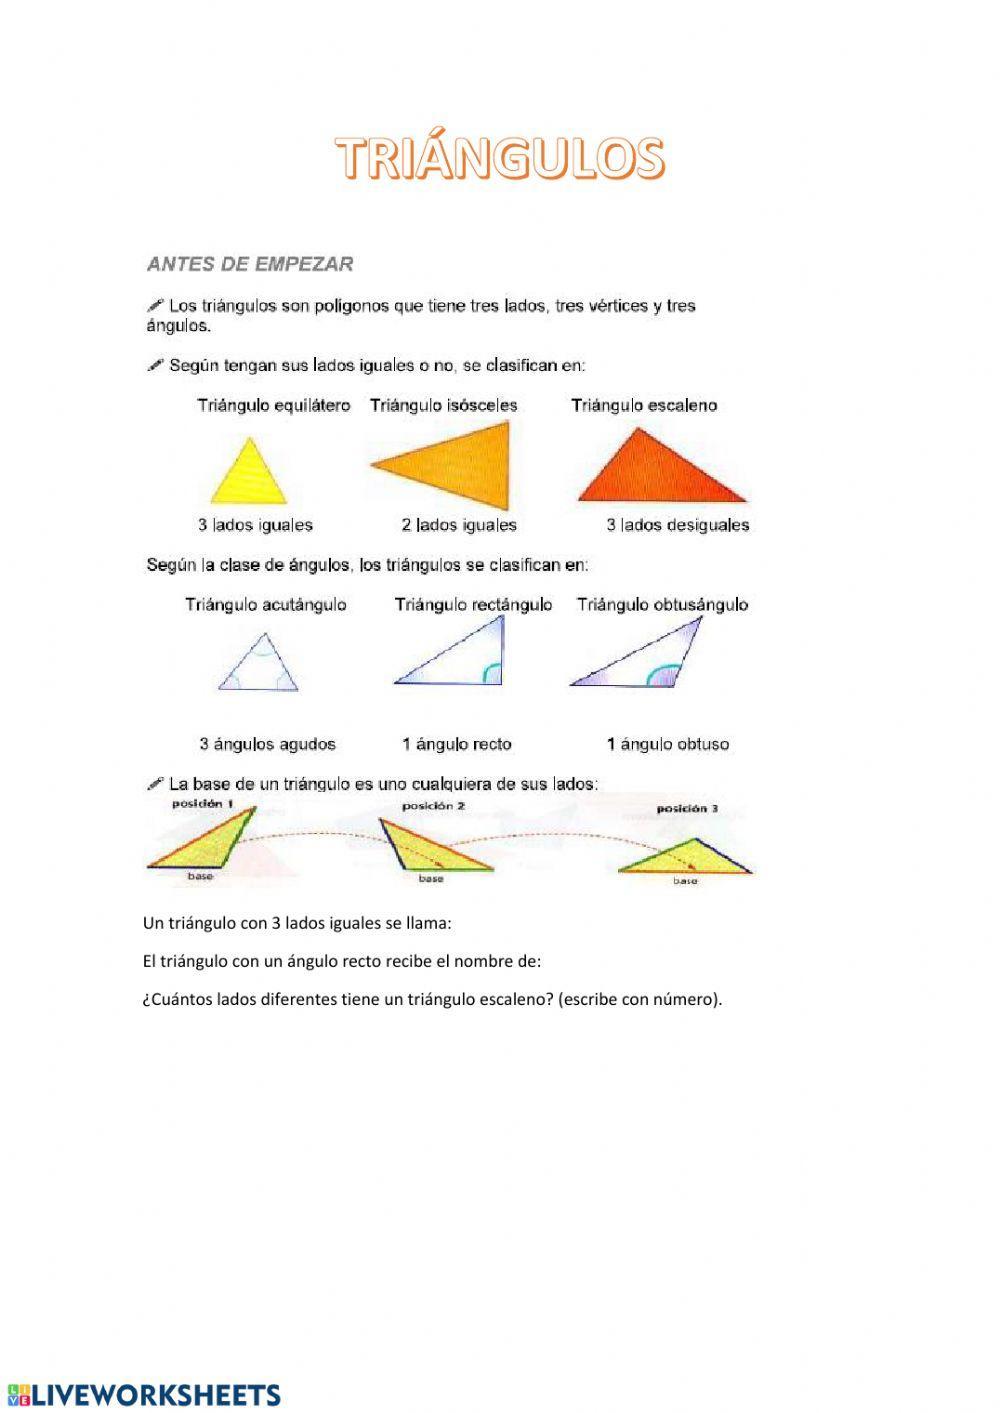 Tipo de triángulos